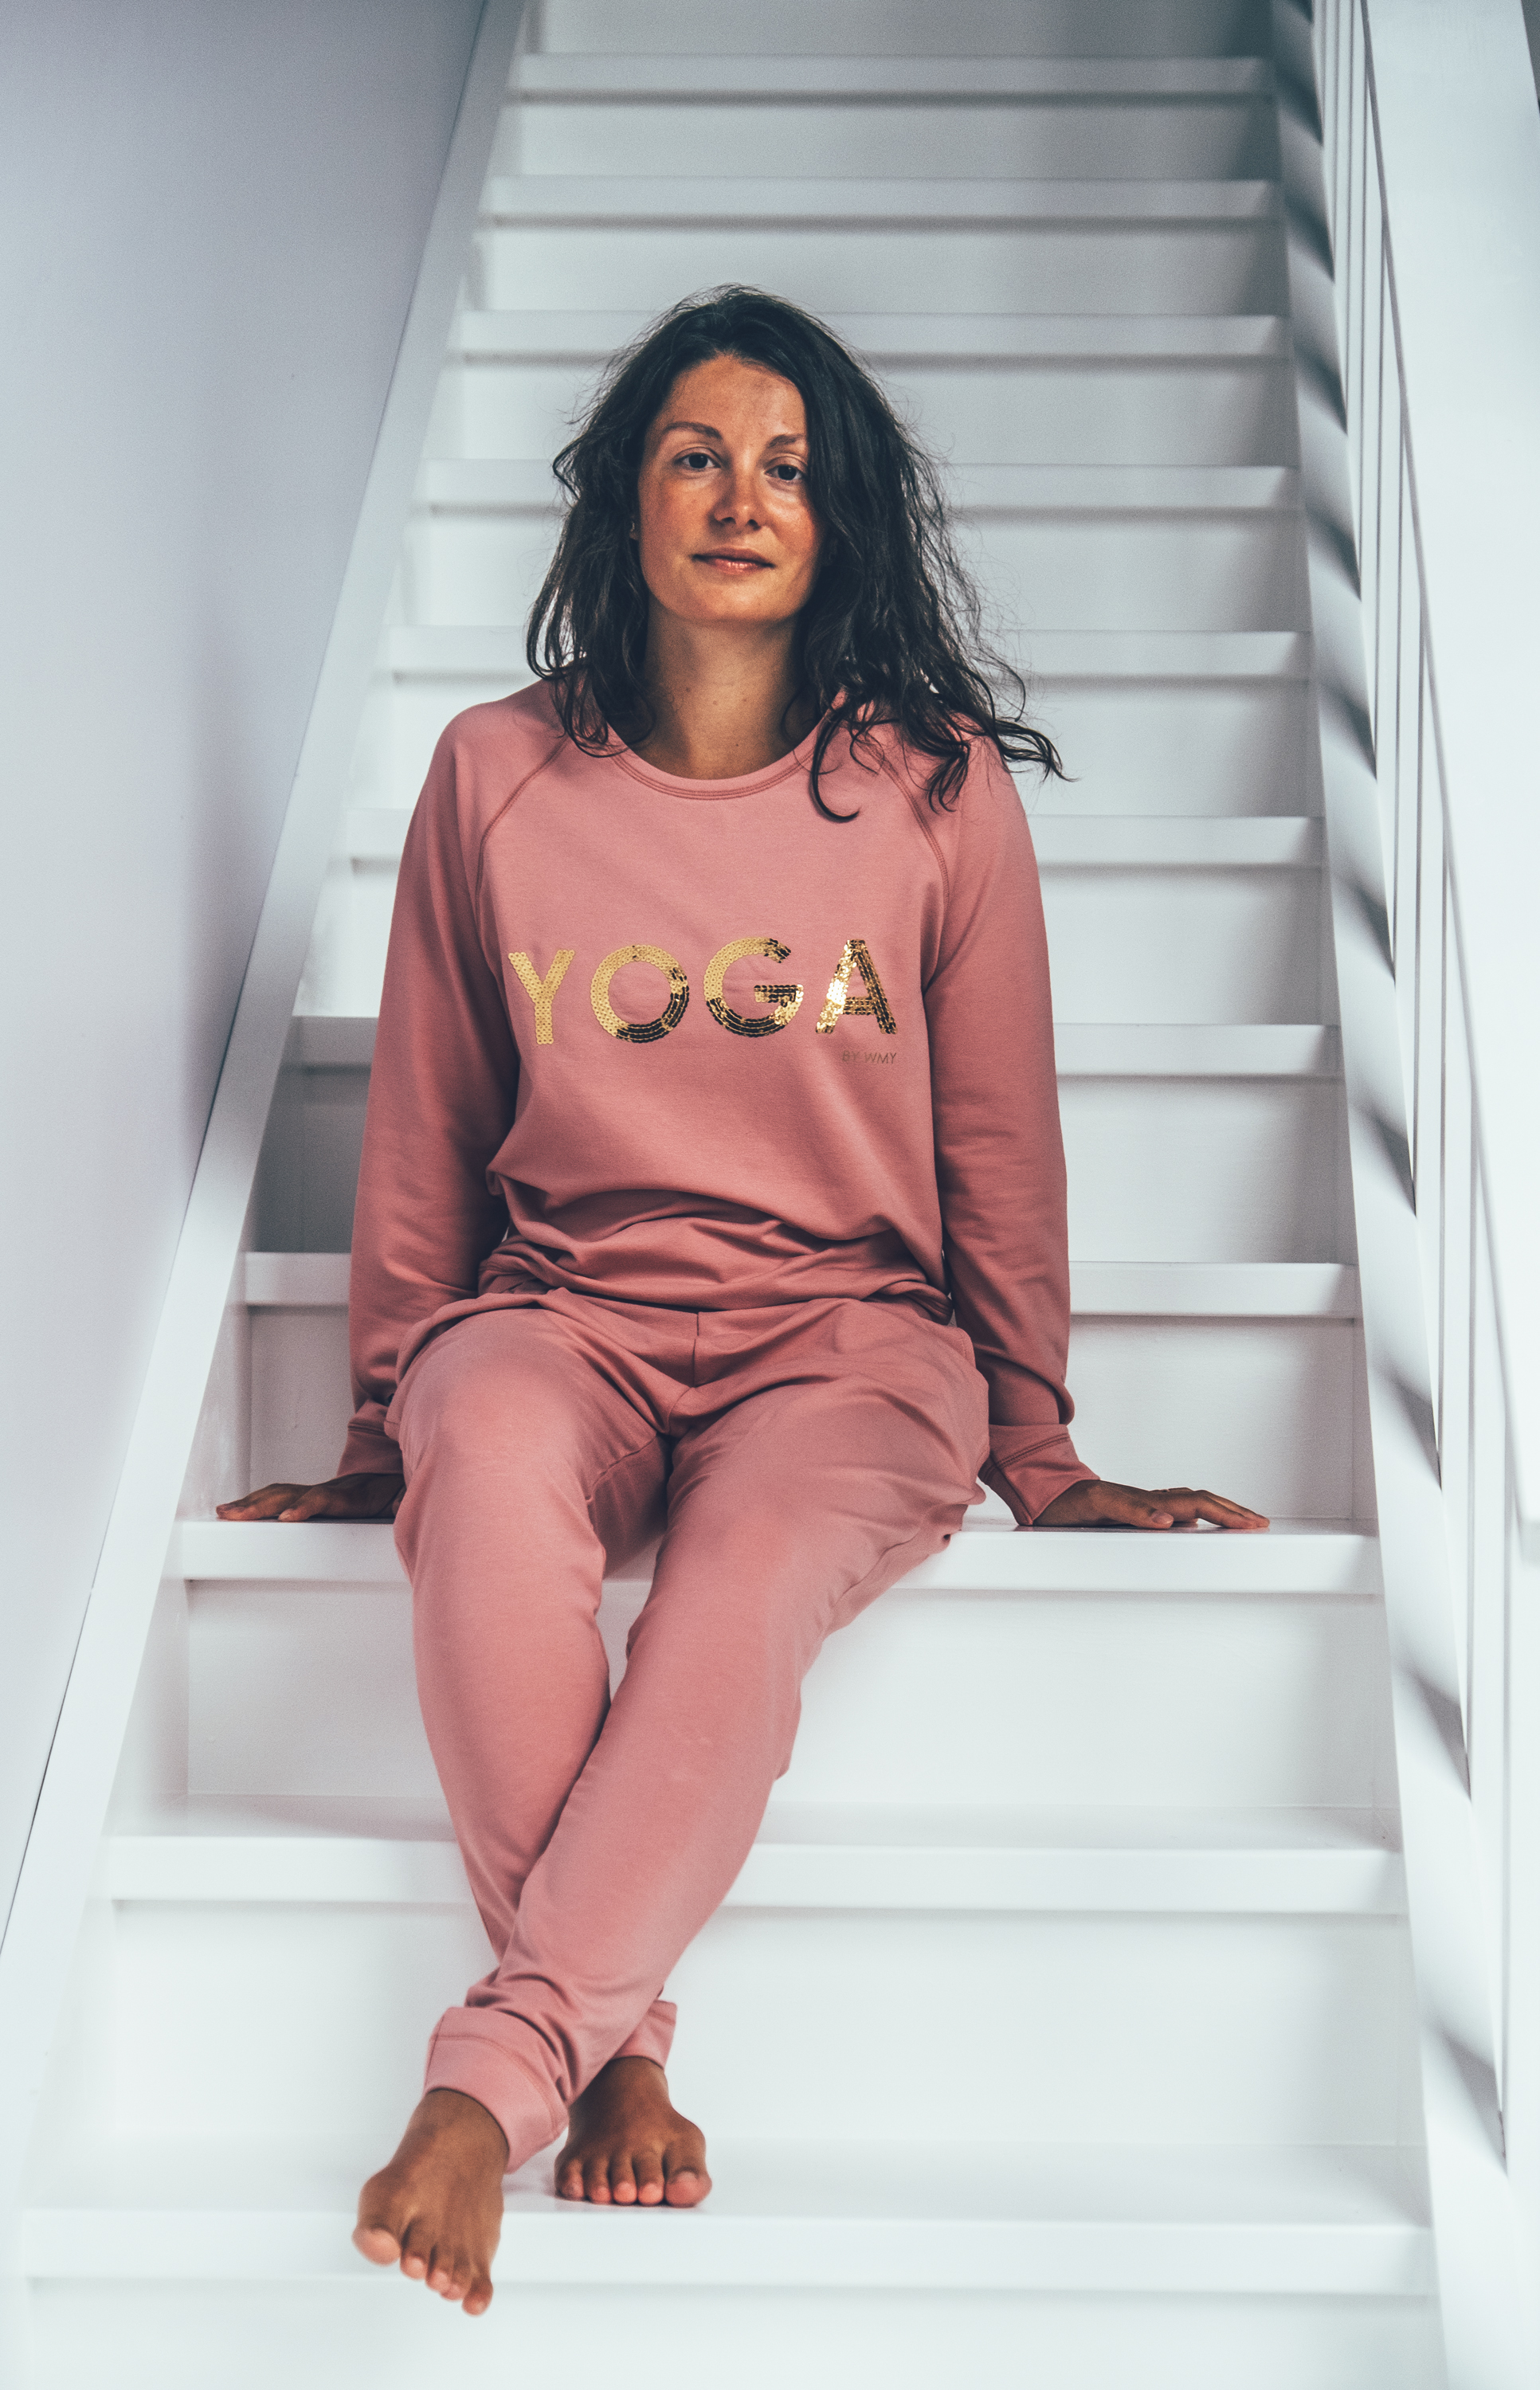 Modellen bär en rosa yogatröja med texten YOGA i guld.